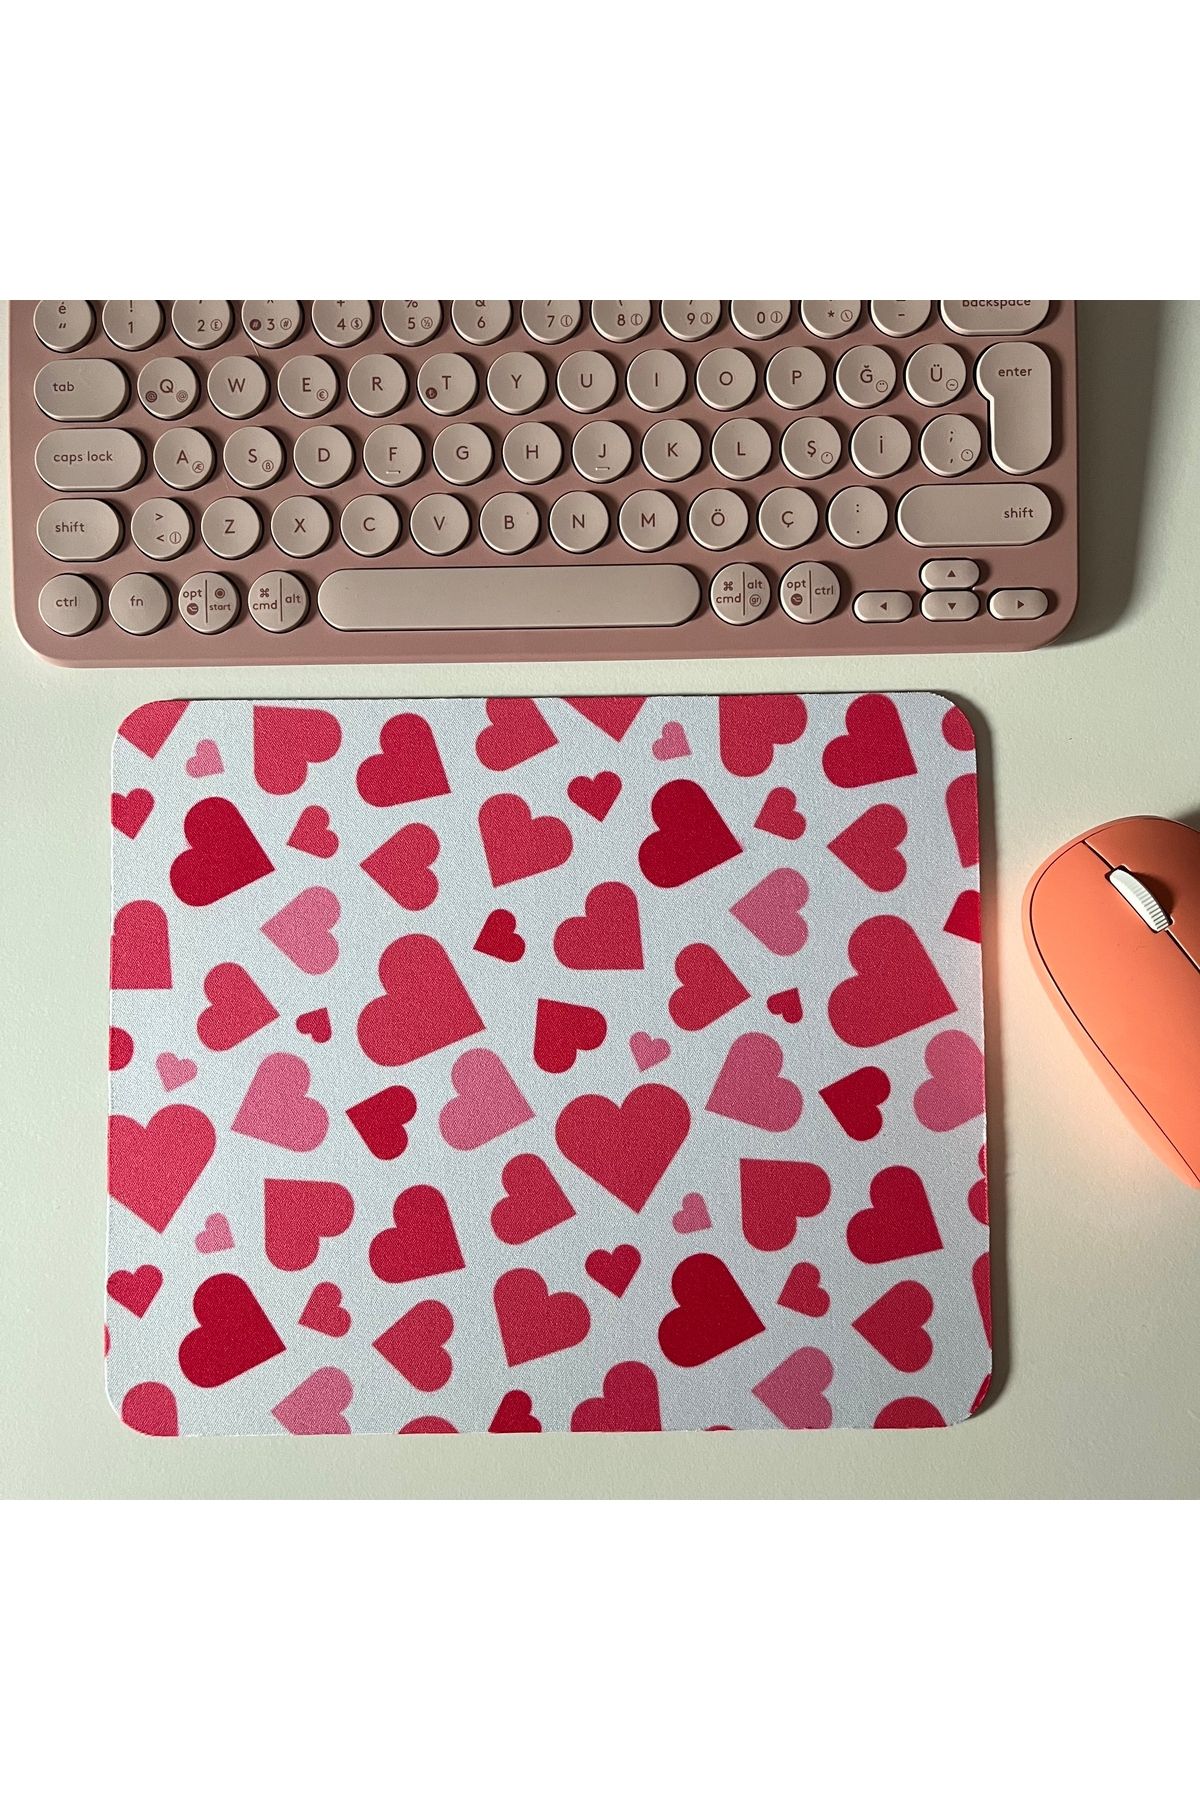 Duxy Kalp Mouse Pad, 23x19 cm, Kaymaz Taban, Ev, Ofis ve Oyun için Rahat ve Yumuşak Mousepad